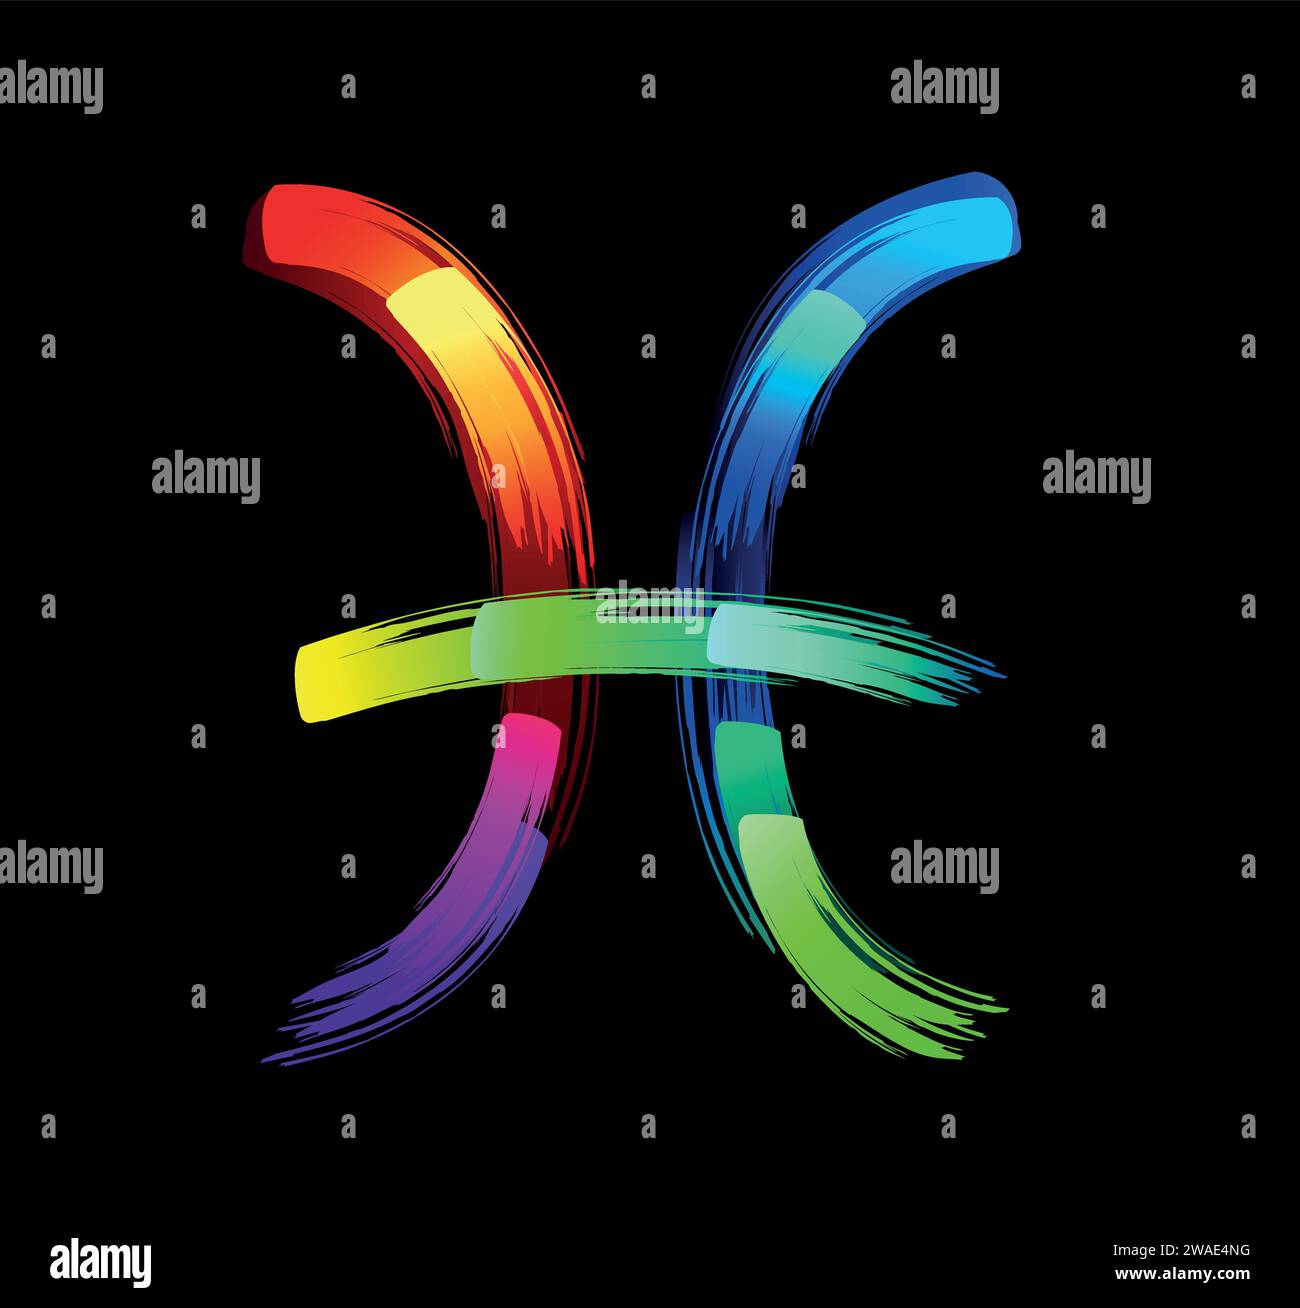 Segno zodiacale dei pesci, dipinto con grandi tratti di arcobaleno, luminoso, multicolore, luminescente, vernice al neon su sfondo nero. Simbolo Zodiaco. Illustrazione Vettoriale